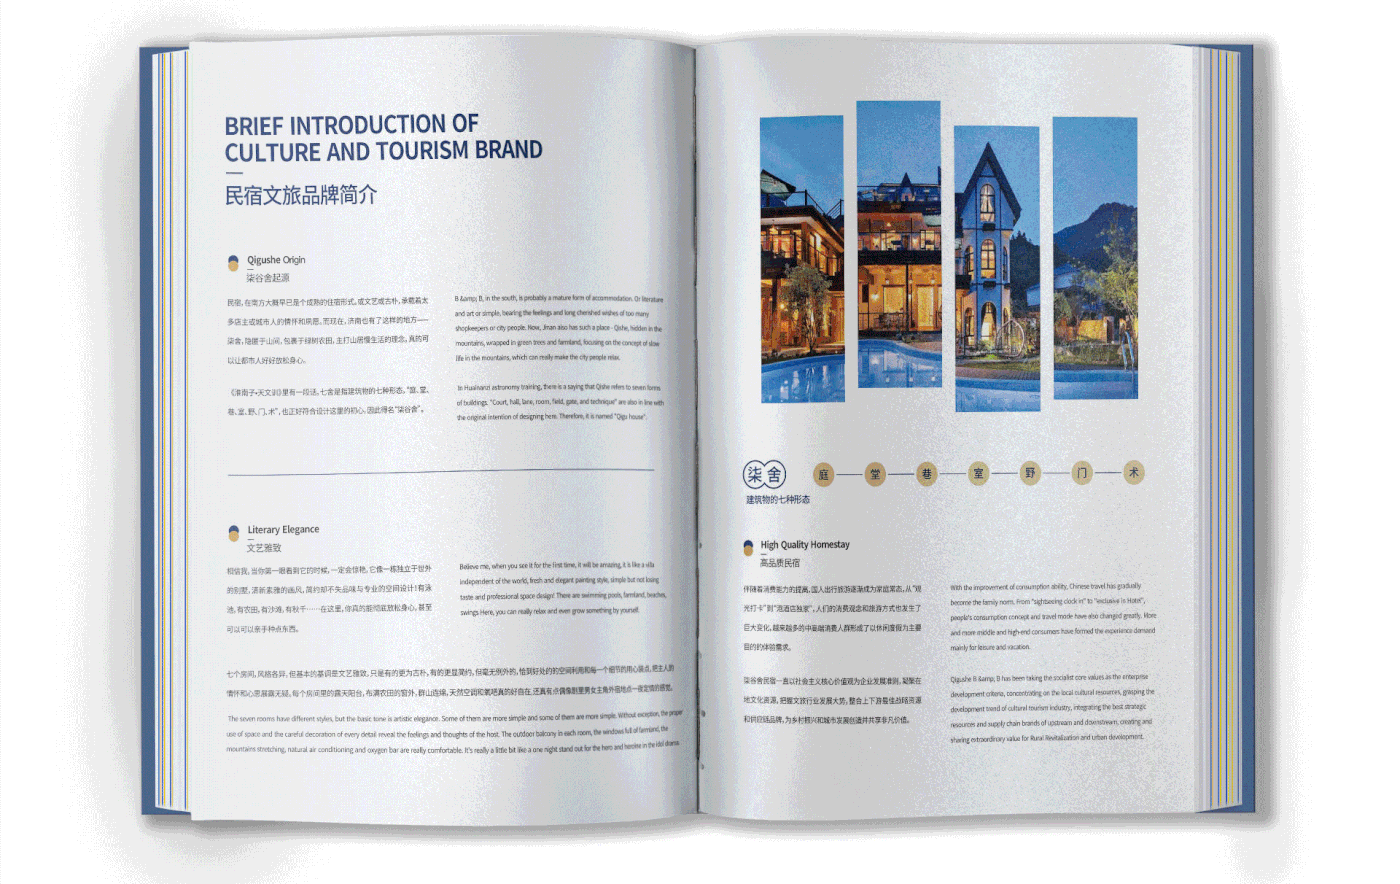 印刷工艺 商业设计 商务 排版 文旅画册设计 文艺版式设计 民宿画册设计 海报标题 版式设计 特种纸